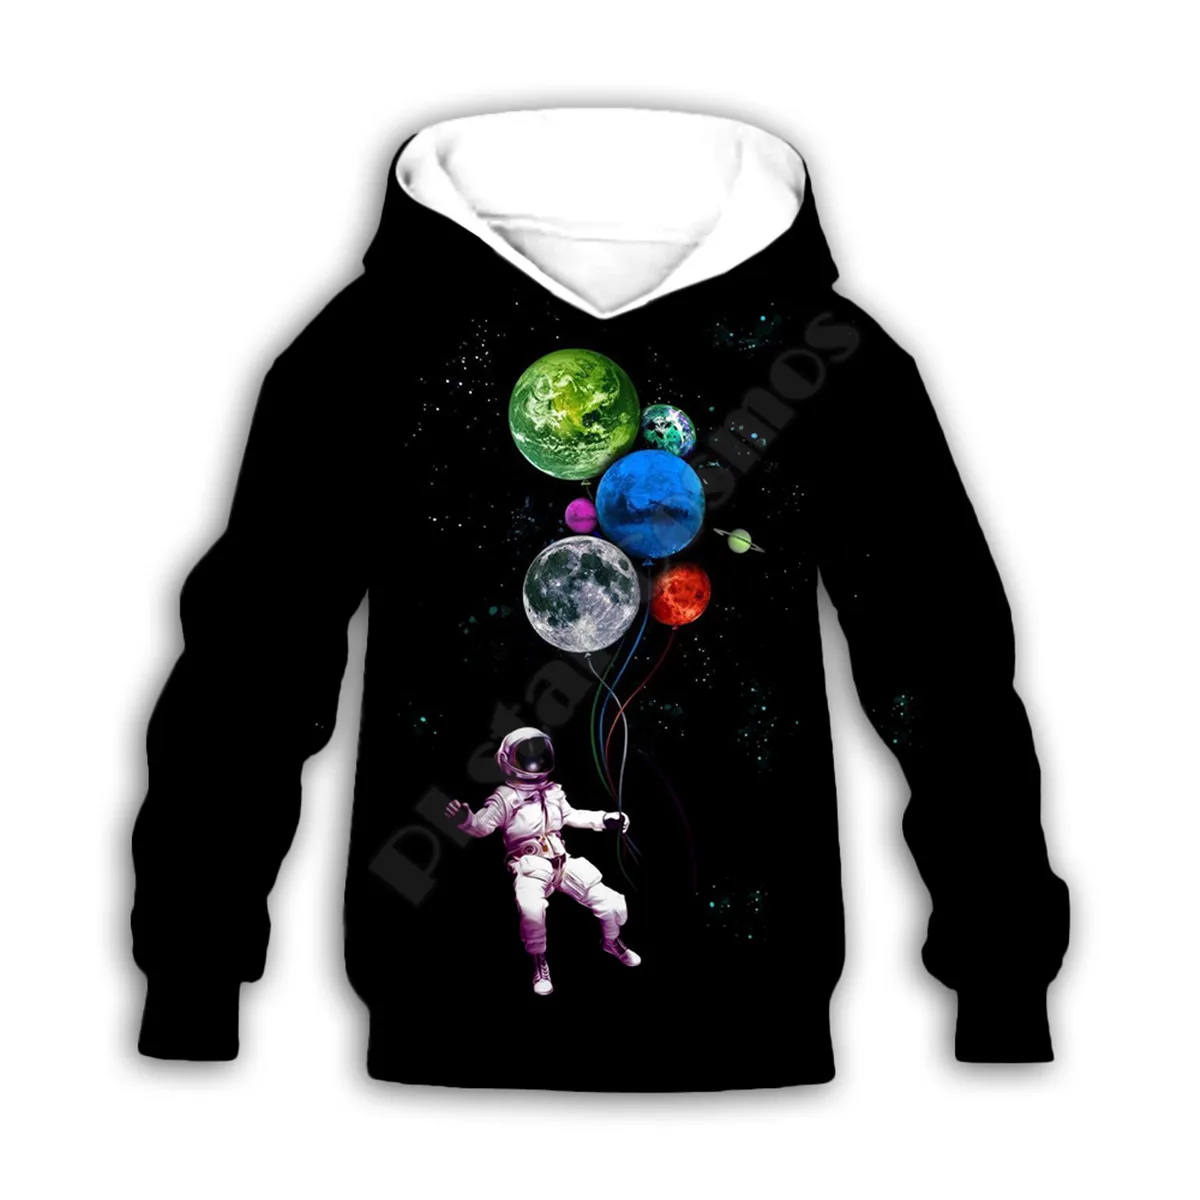 

Худи с 3d принтом астронавта Galaxy, семейный костюм, футболка на молнии, пуловер, Детский костюм, свитшот, спортивный костюм/брюки 09